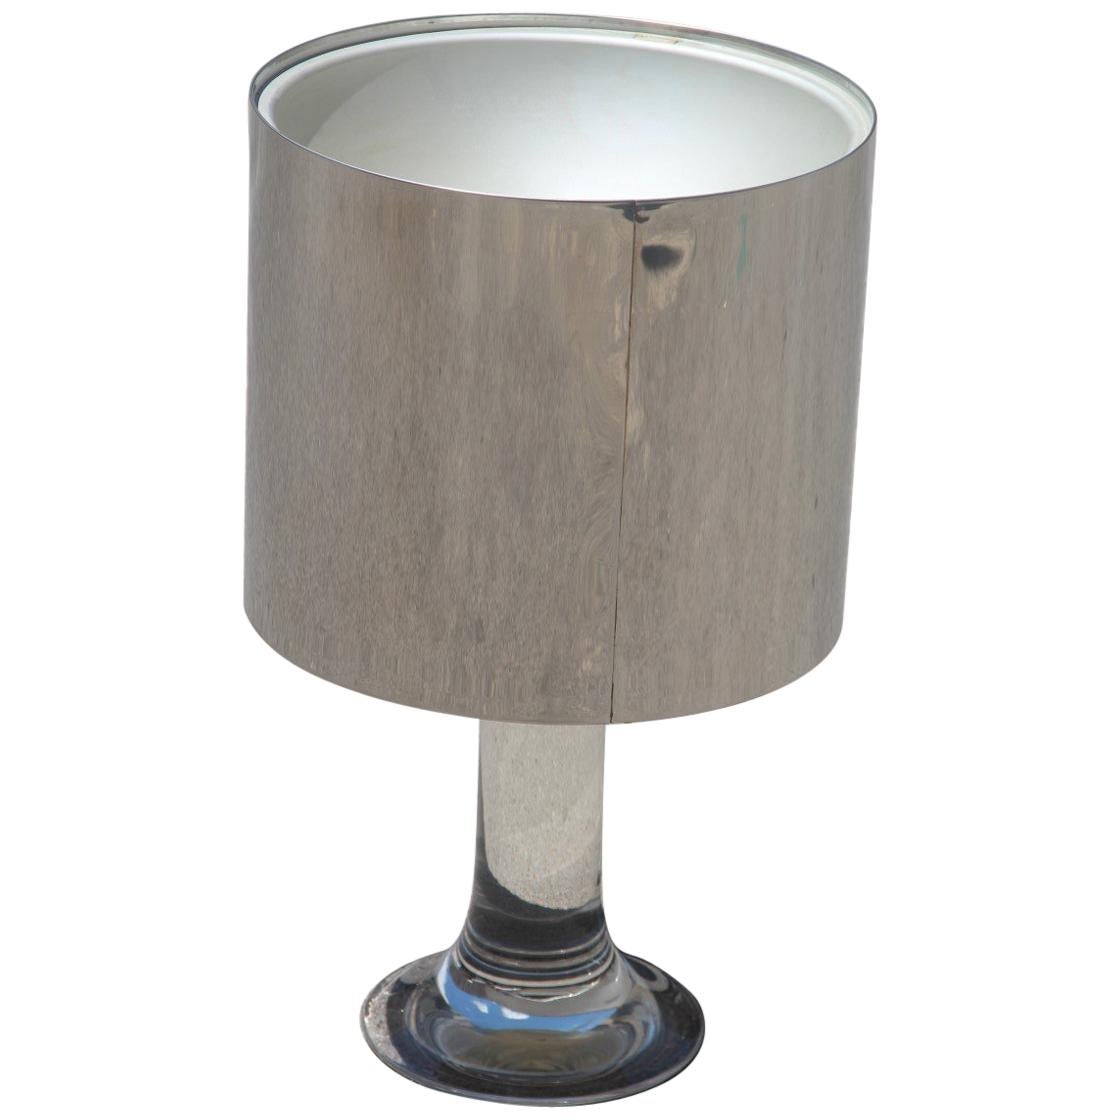 Round Harvey Guzzini Table Lamp Lucite Steel Italian Design 1970s Silver For Sale